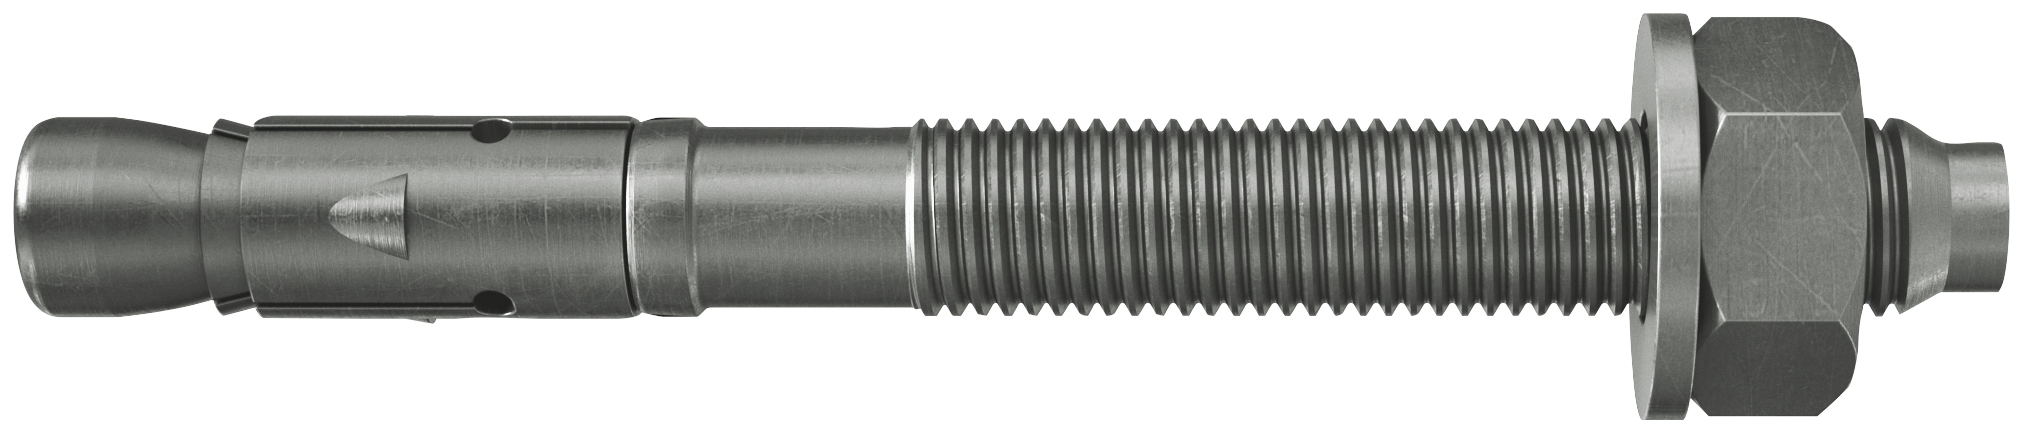 fischer Tassello acciaio FAZ II 20/30 A4 (4 Pz.) L'ancorante ad espansione ad alte prestazioni per carichi statici su calcestruzzo fessurato e per applicazioni sismiche. Versione in acciaio inossidabile con classe di resistenza alla corrosione CRC III..